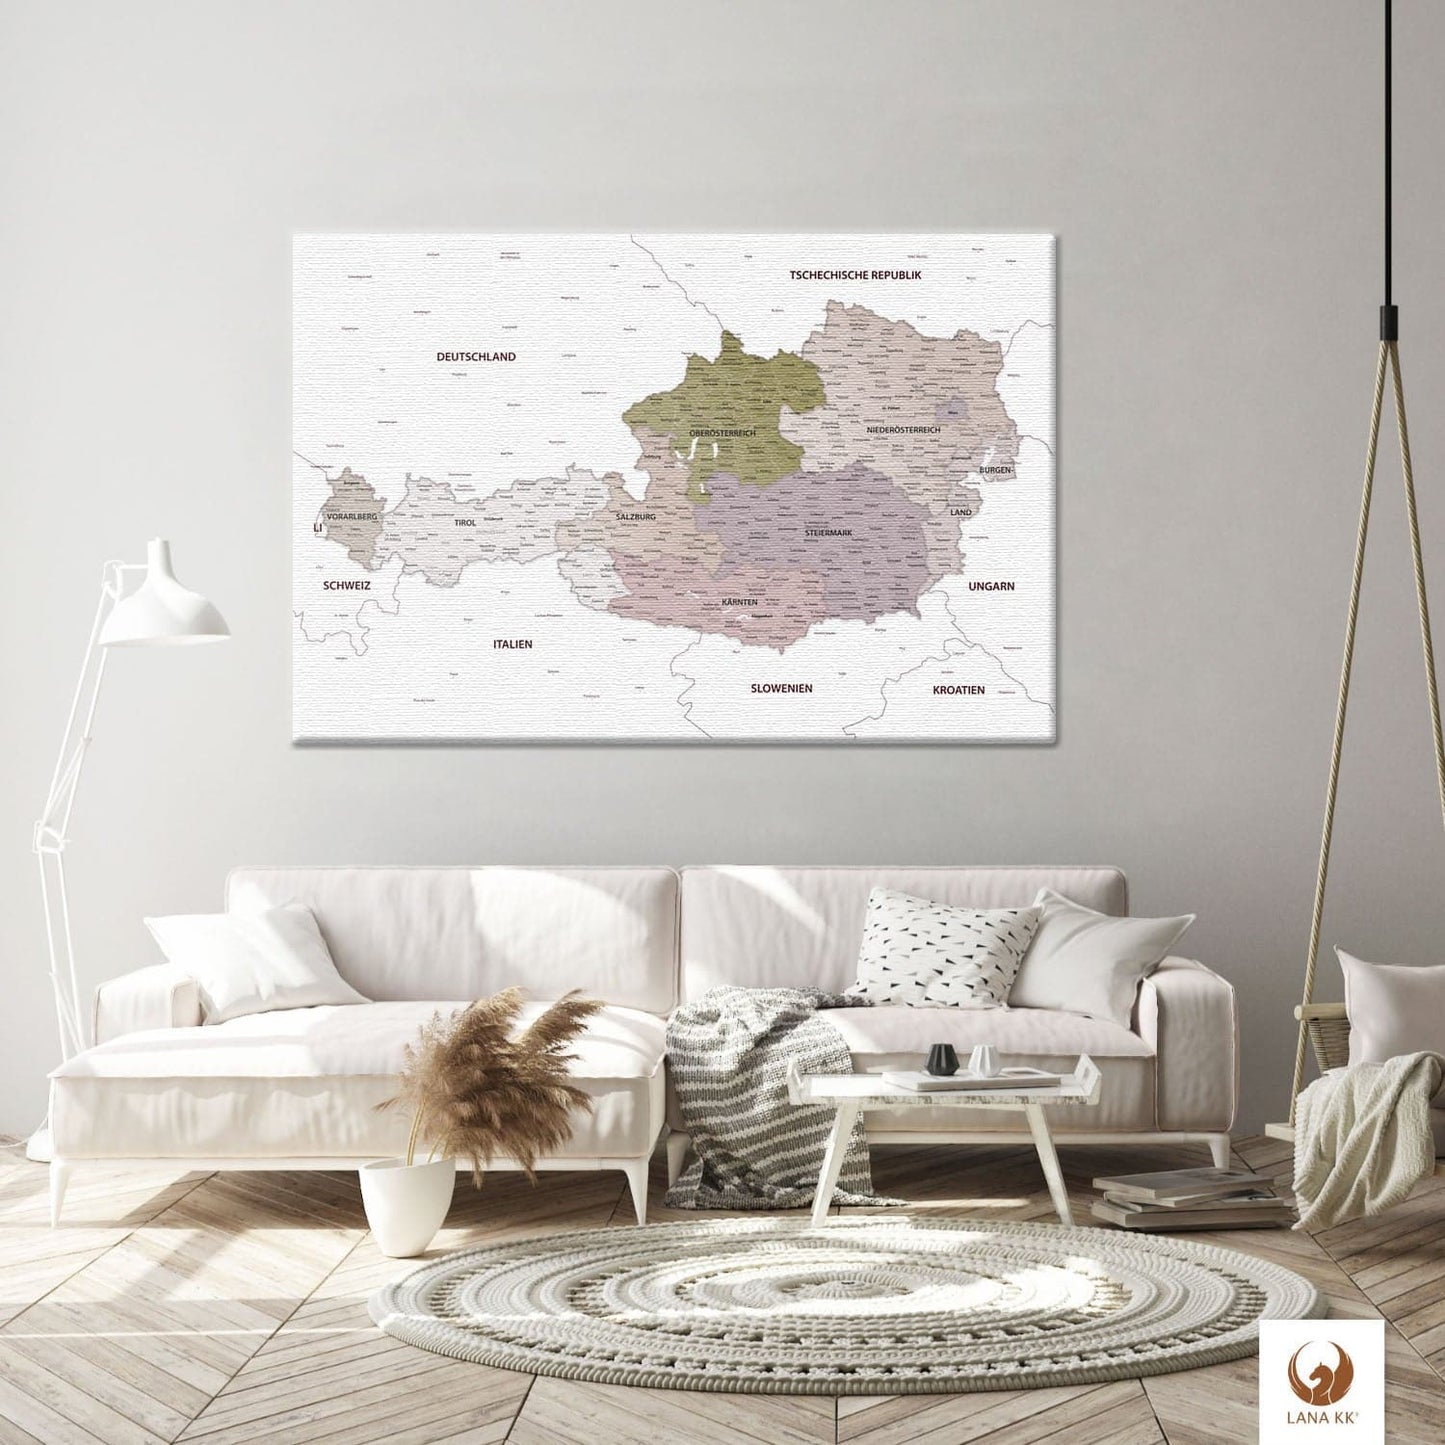 Die Welt als Zentrum Deiner Wohnung. Deine Österreichkarte Weiß für sich mit ihren ausgewogenen Farben ideal in Dein Wohnkonzept ein.